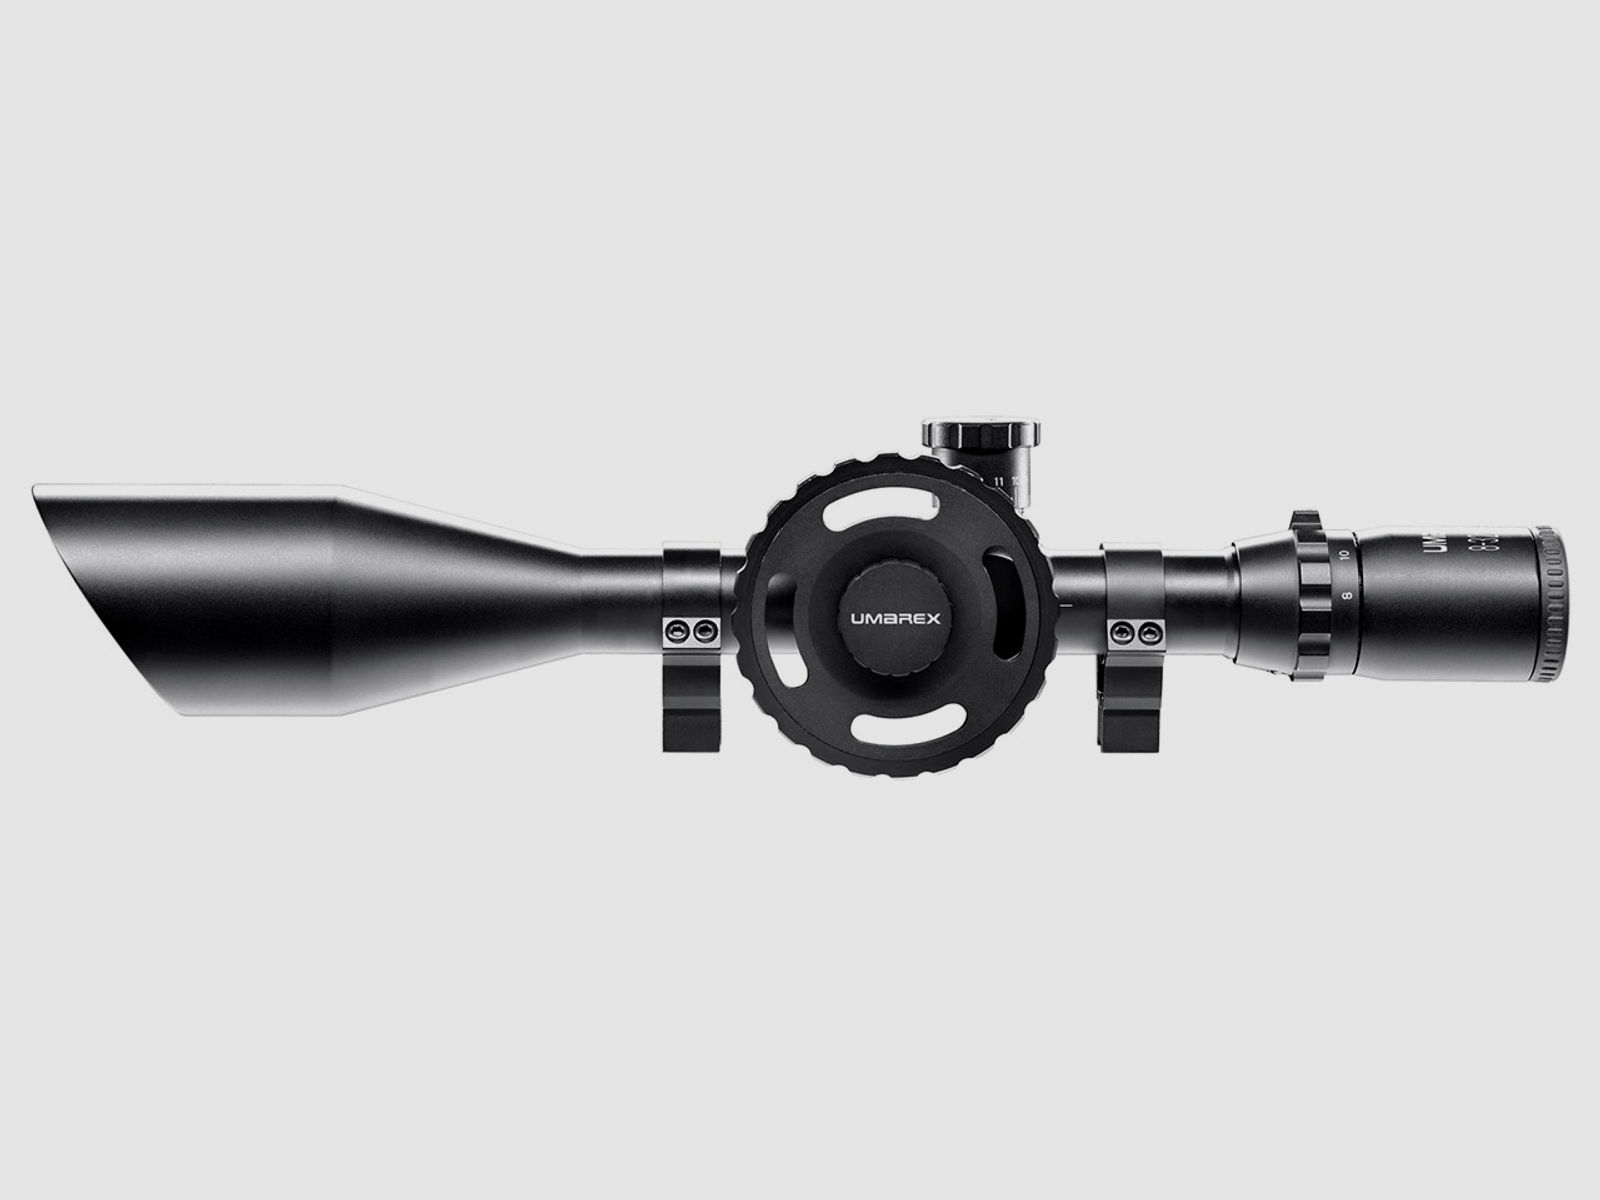 Zielfernrohr Umarex RS 8-32x56 FT TacDot Absehen 30 mm Tubus inklusive Ringmontagen fĂĽr 11 mm Prismenschiene